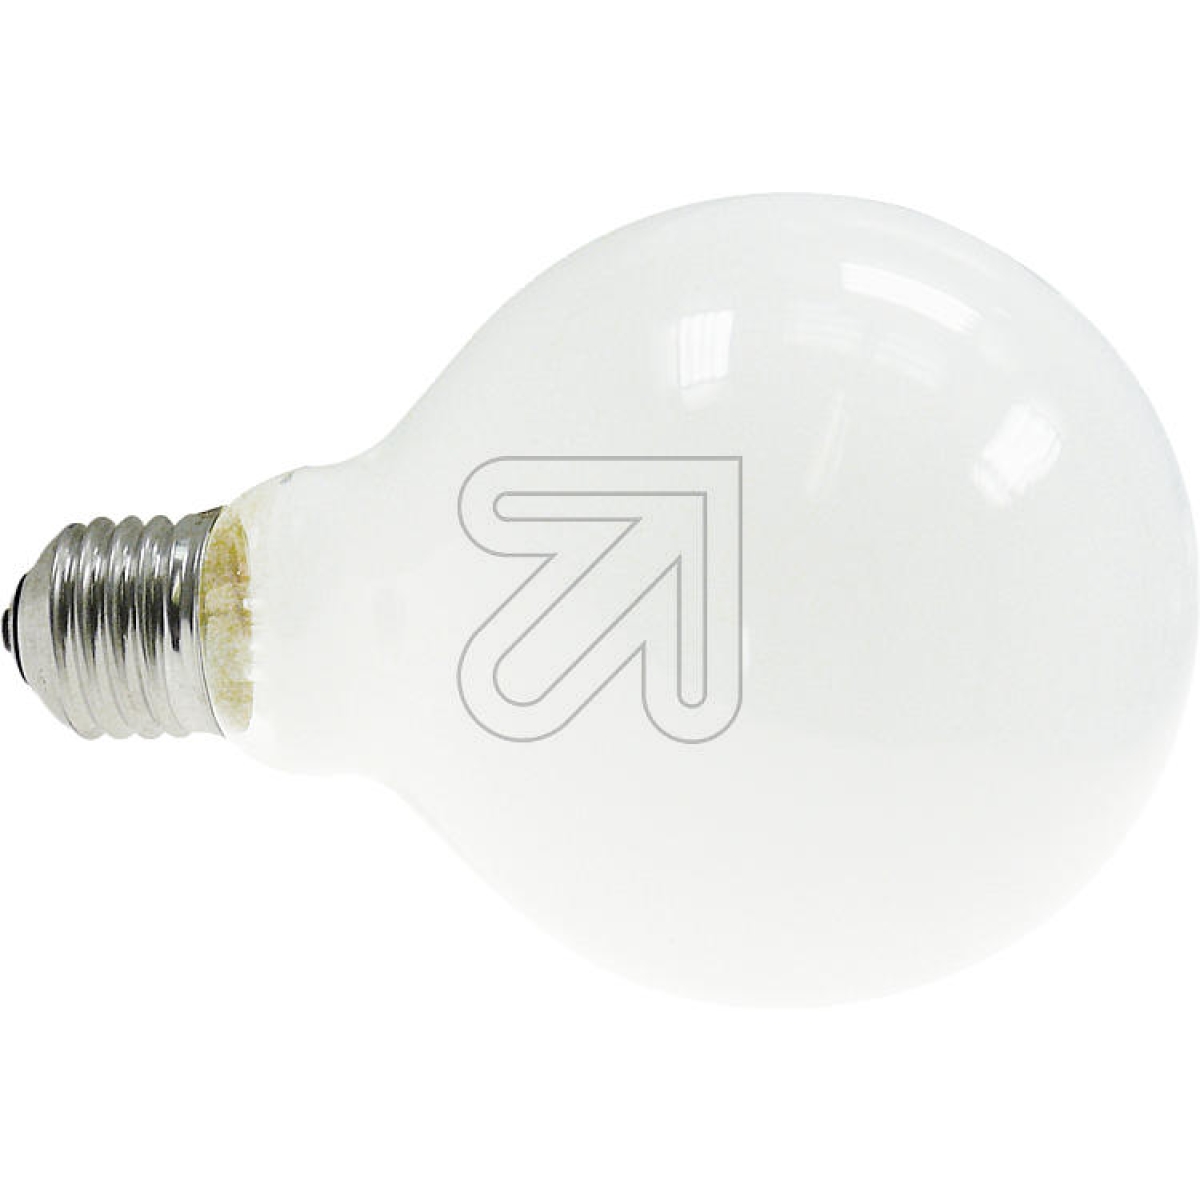 SIGORGlobe-Lampe stoßfest 40W 95mm opal E27 3604001